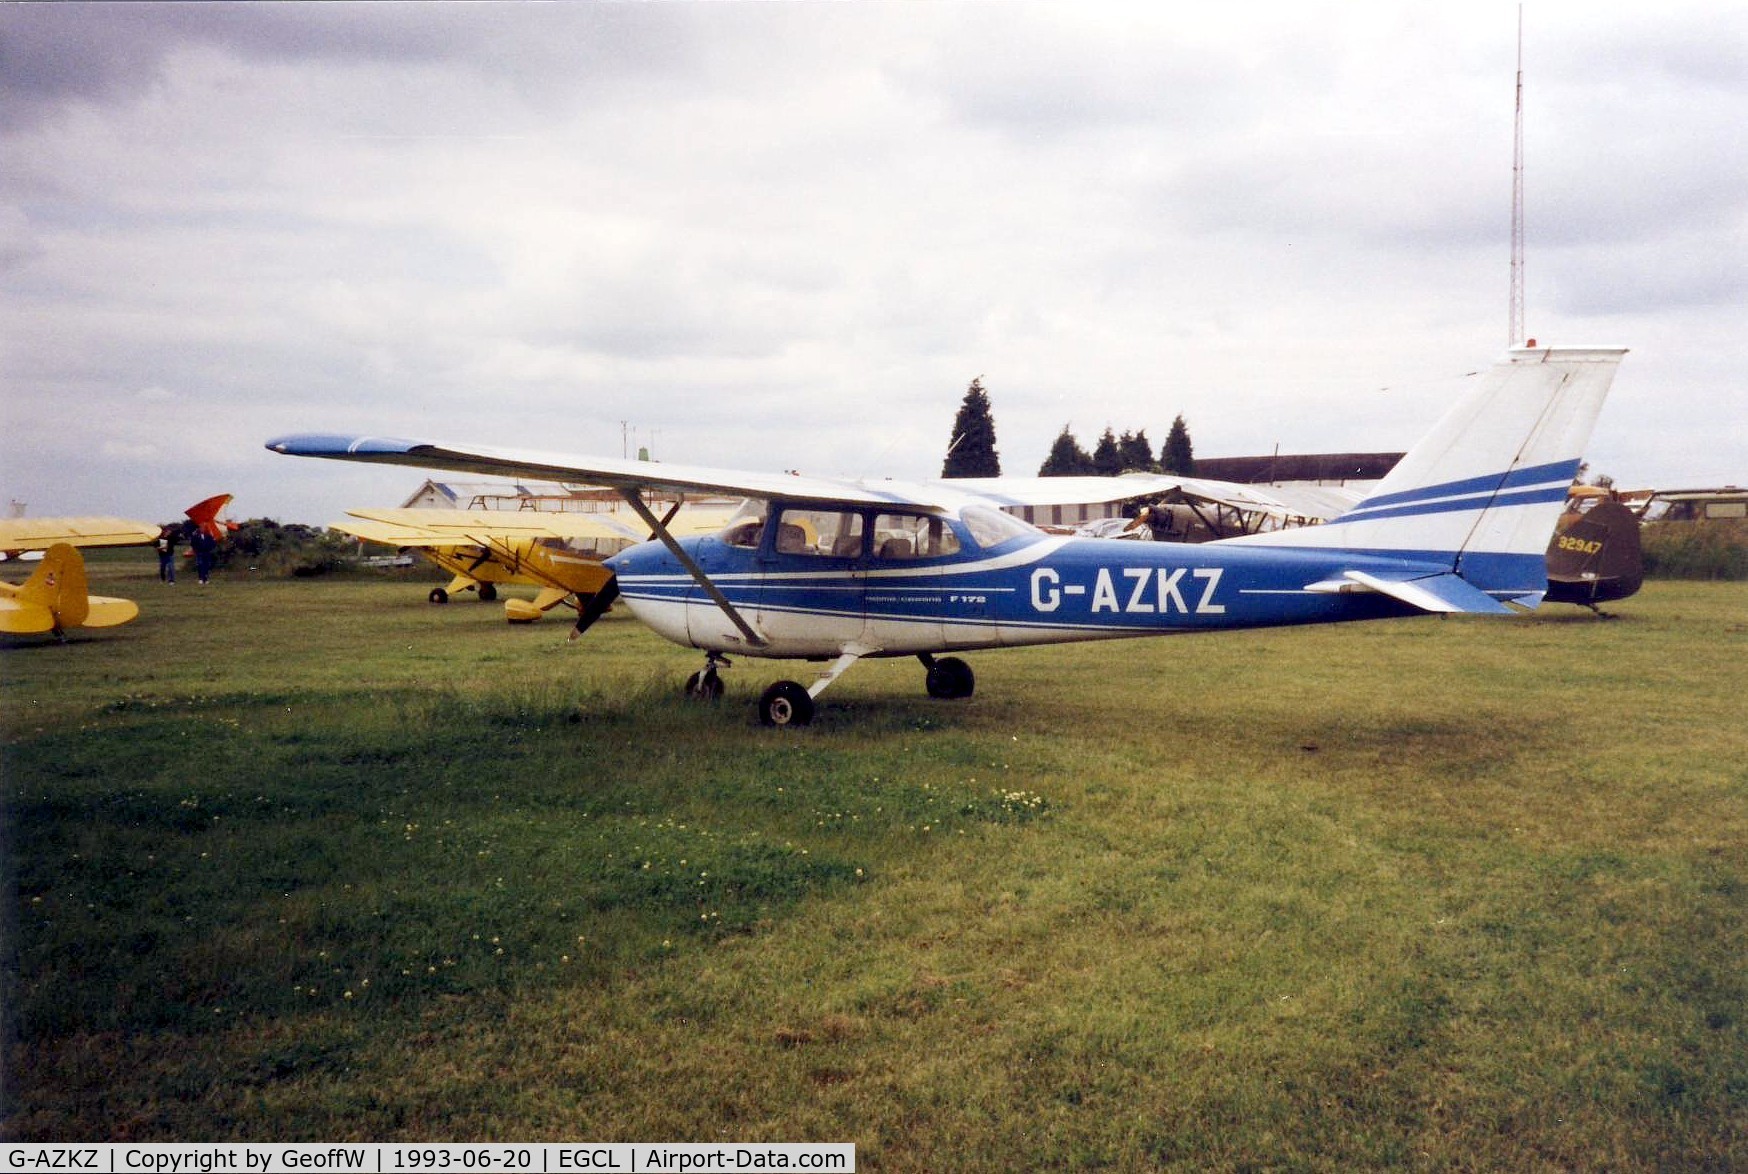 G-AZKZ, 1972 Reims F172L Skyhawk C/N 0814, Taken at a Vintage Piper Fly-in